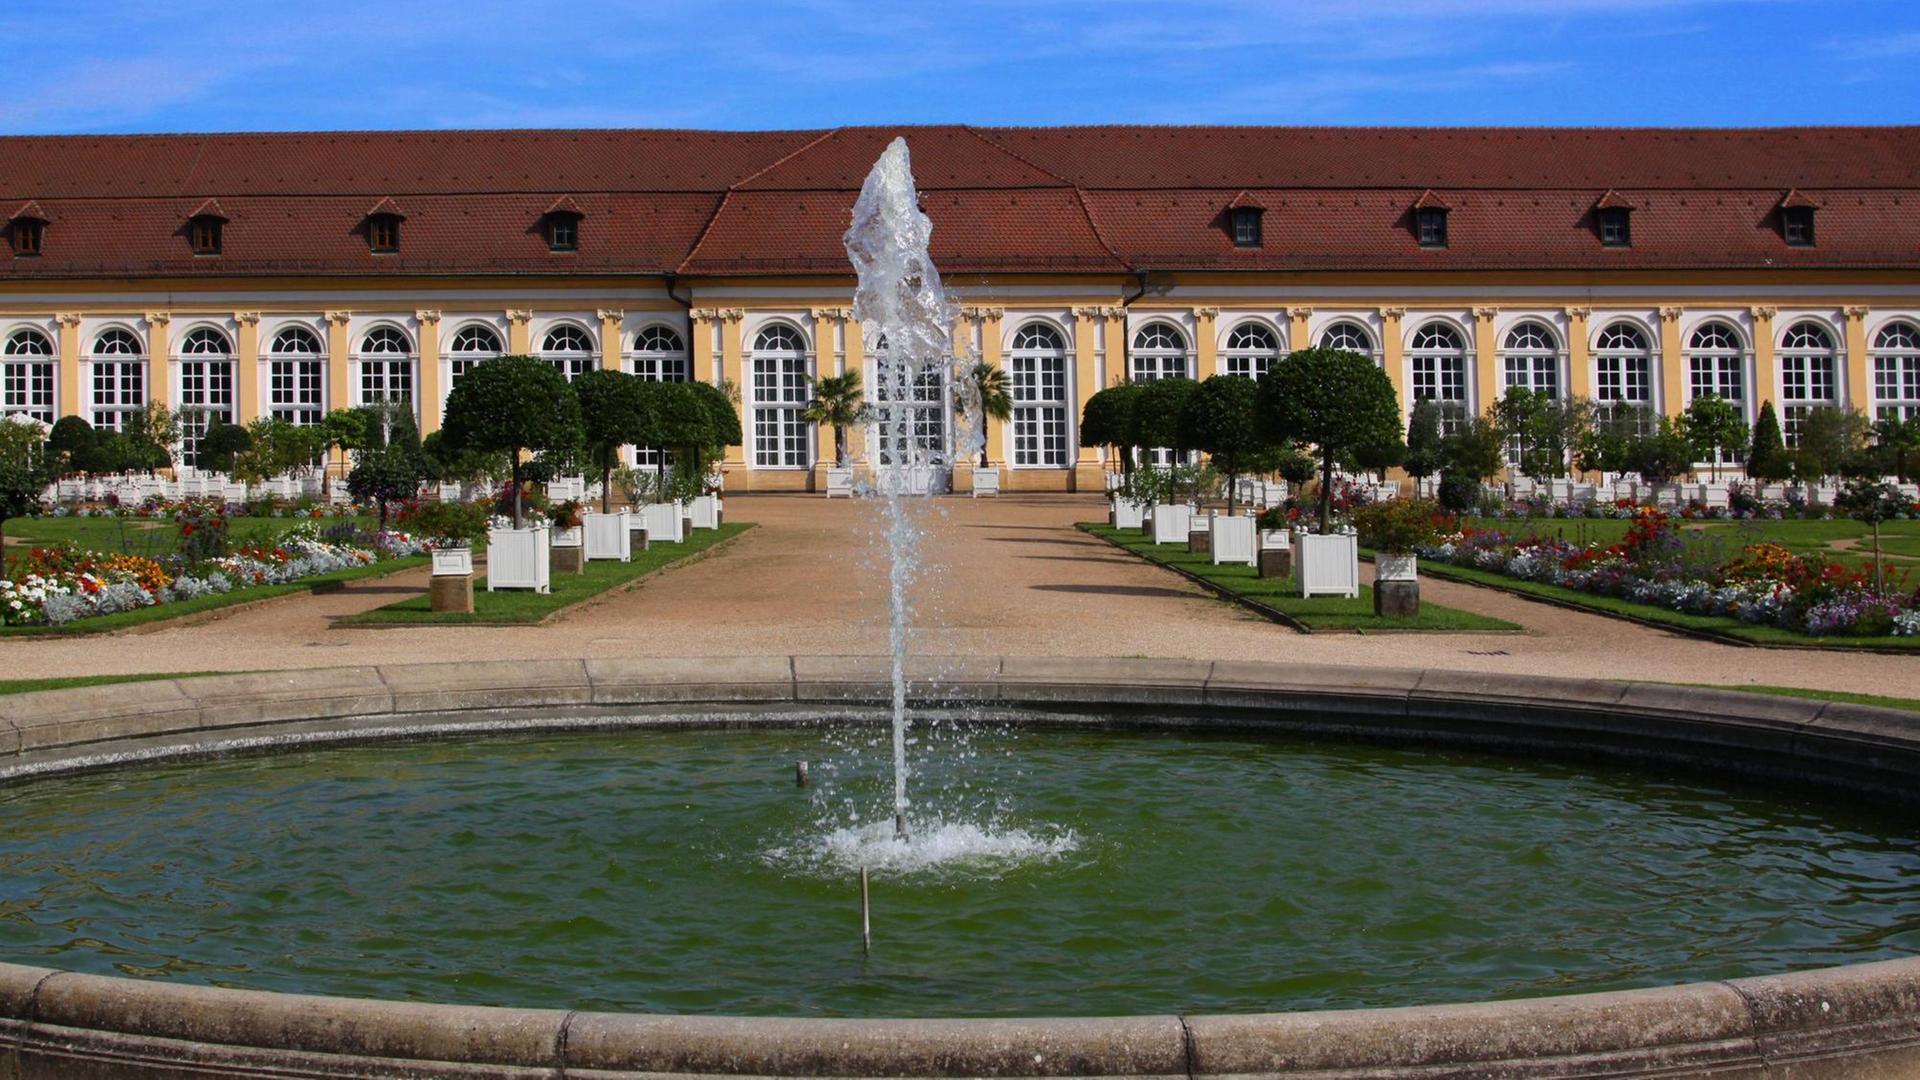 Blick auf die barocke Front der Orangerie des Schlosses Ansbach mit einer Wasserfontäne im Vordergrund